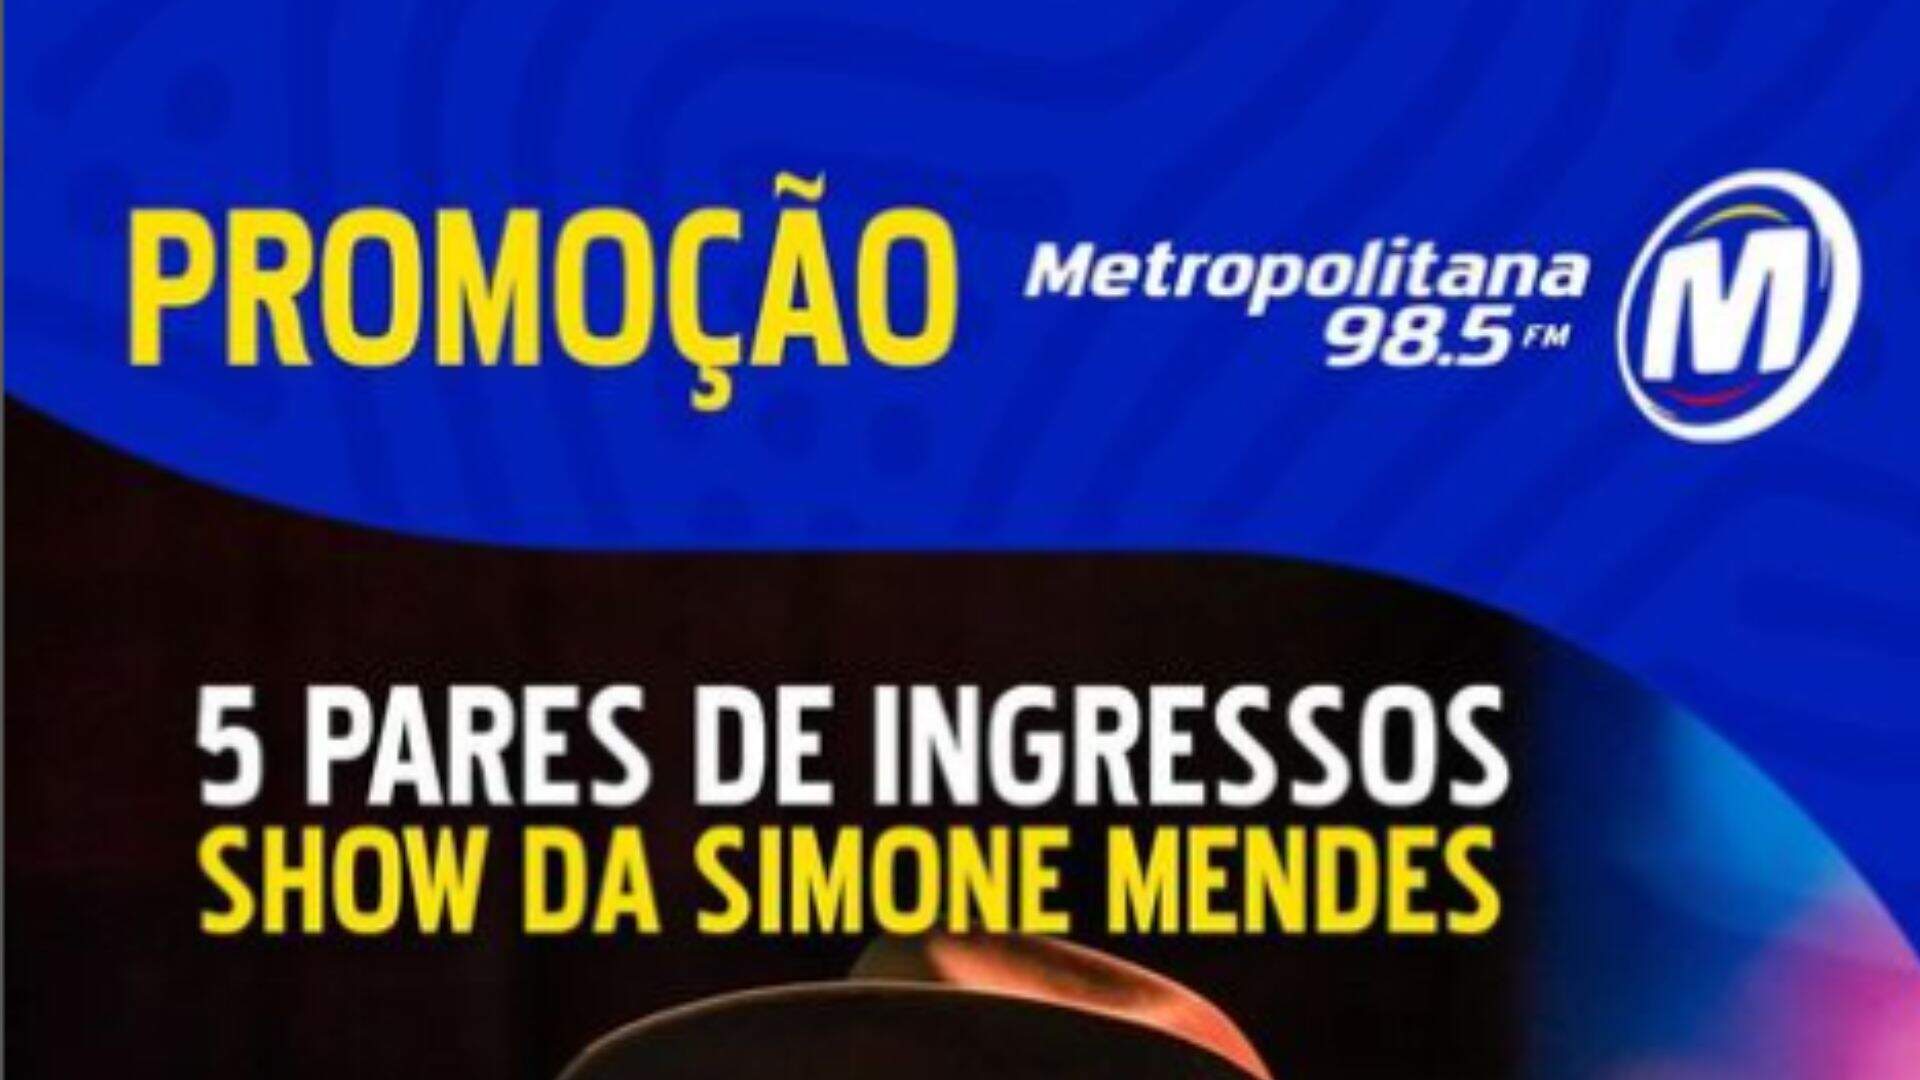 [ENCERRADA] Promoção: INGRESSOS PARA O SHOW DE SIMONE MENDES É NA METROPOLITANA - Metropolitana FM